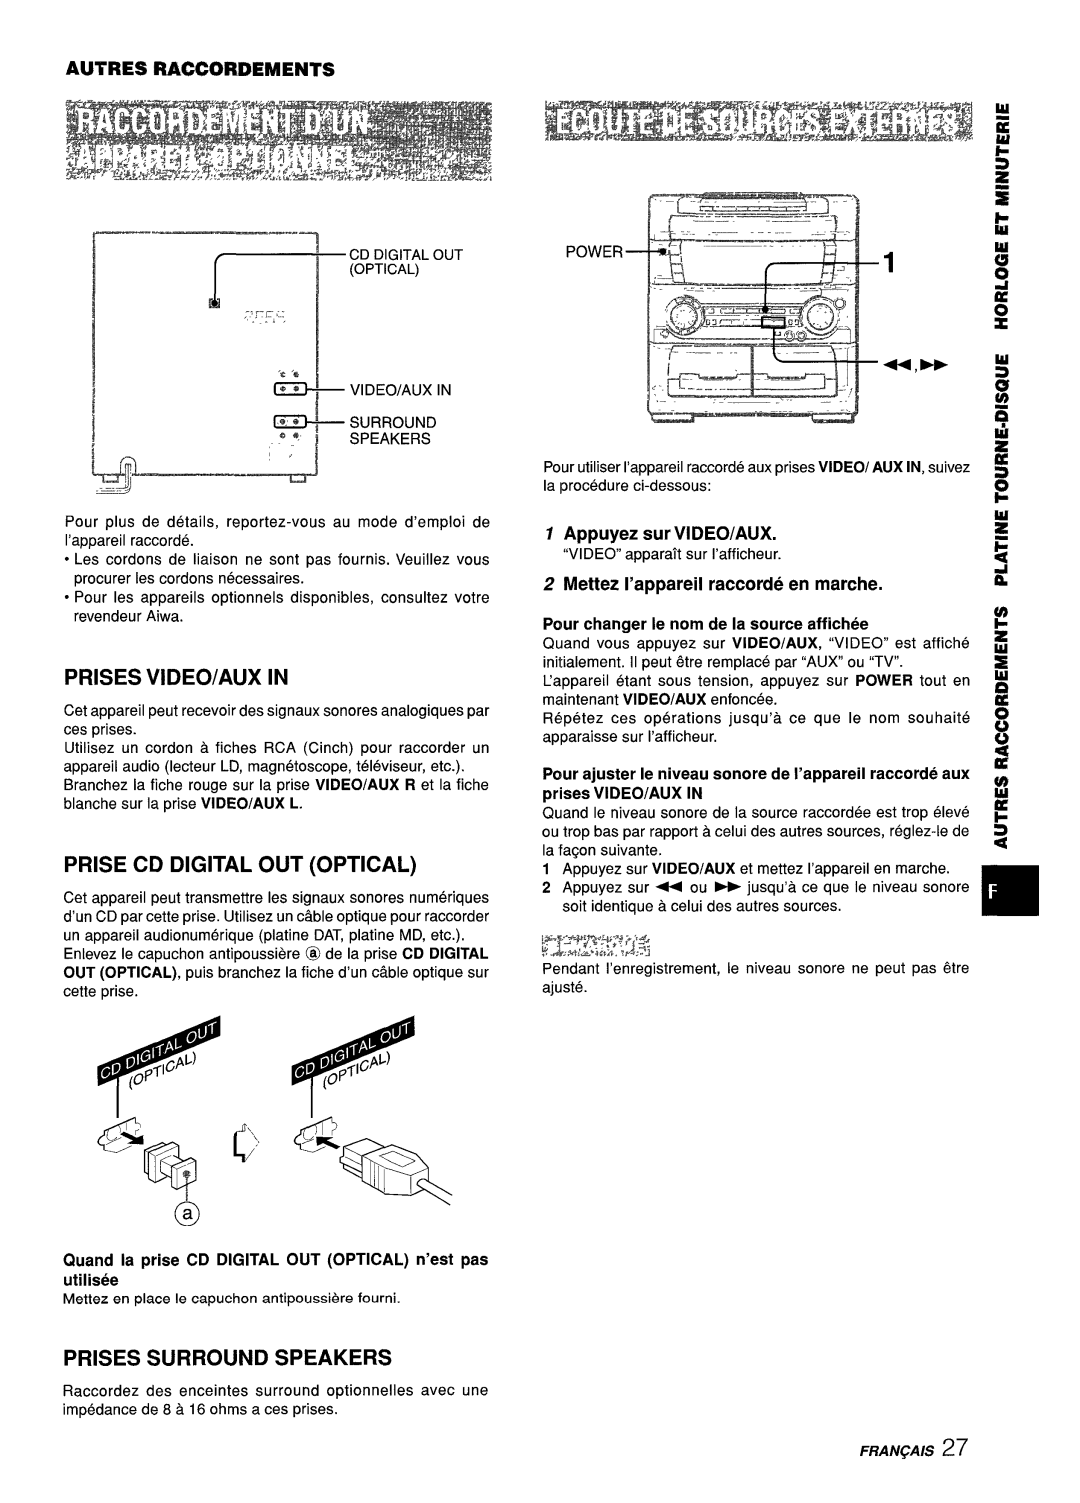 Aiwa Z-L70 manual Prises Video/Aux In, Prise Cd Digital Out Optical, Prises Surround Speakers, Appuyez sur VI DEO/AUX 